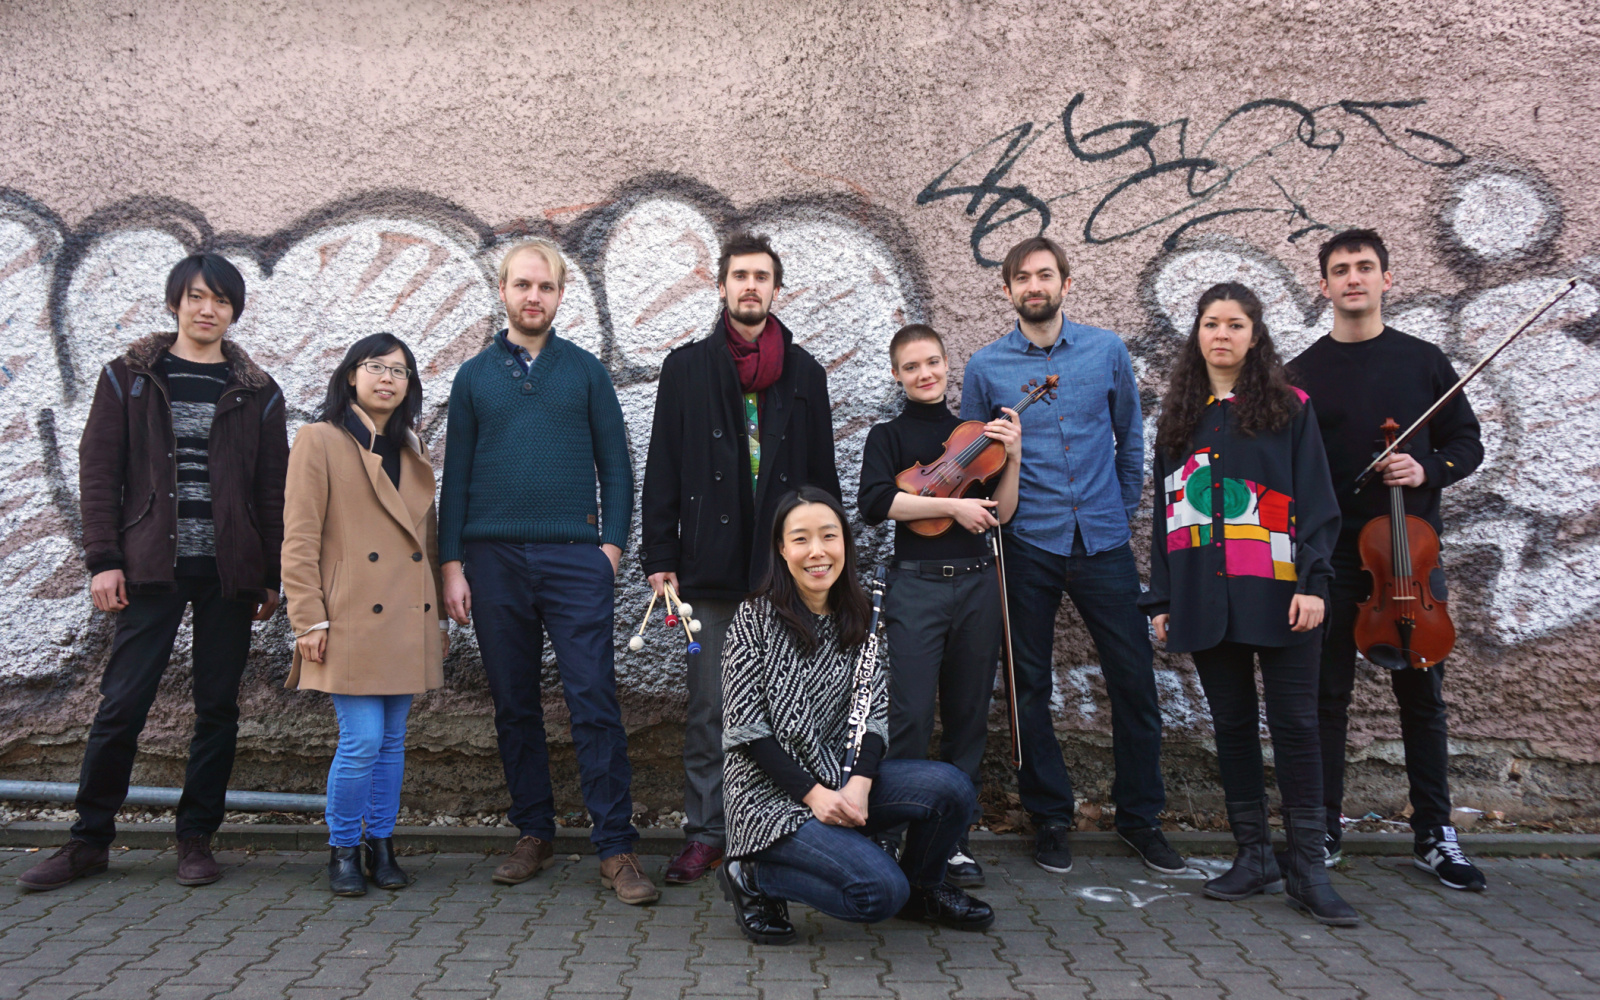 Das Bild zeigt die StipendiatInnen der Internationalen Ensemble Modern Akademie (IEMA) vor einer vollgesprühten Backsteinwand